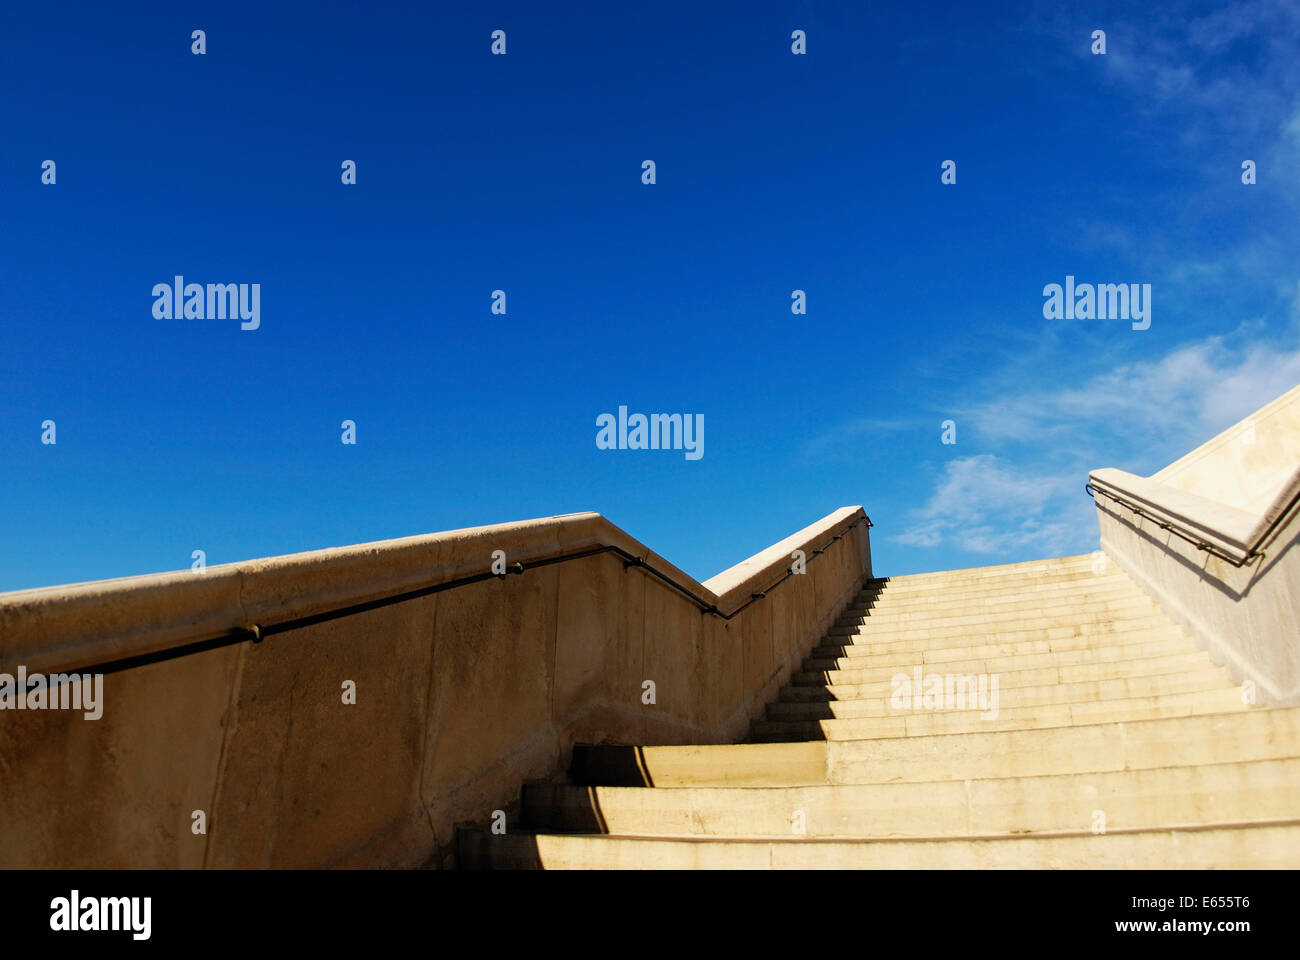 Buscando una escalera de piedra, pasos, escalera que sube al cielo azul en el exterior Foto de stock